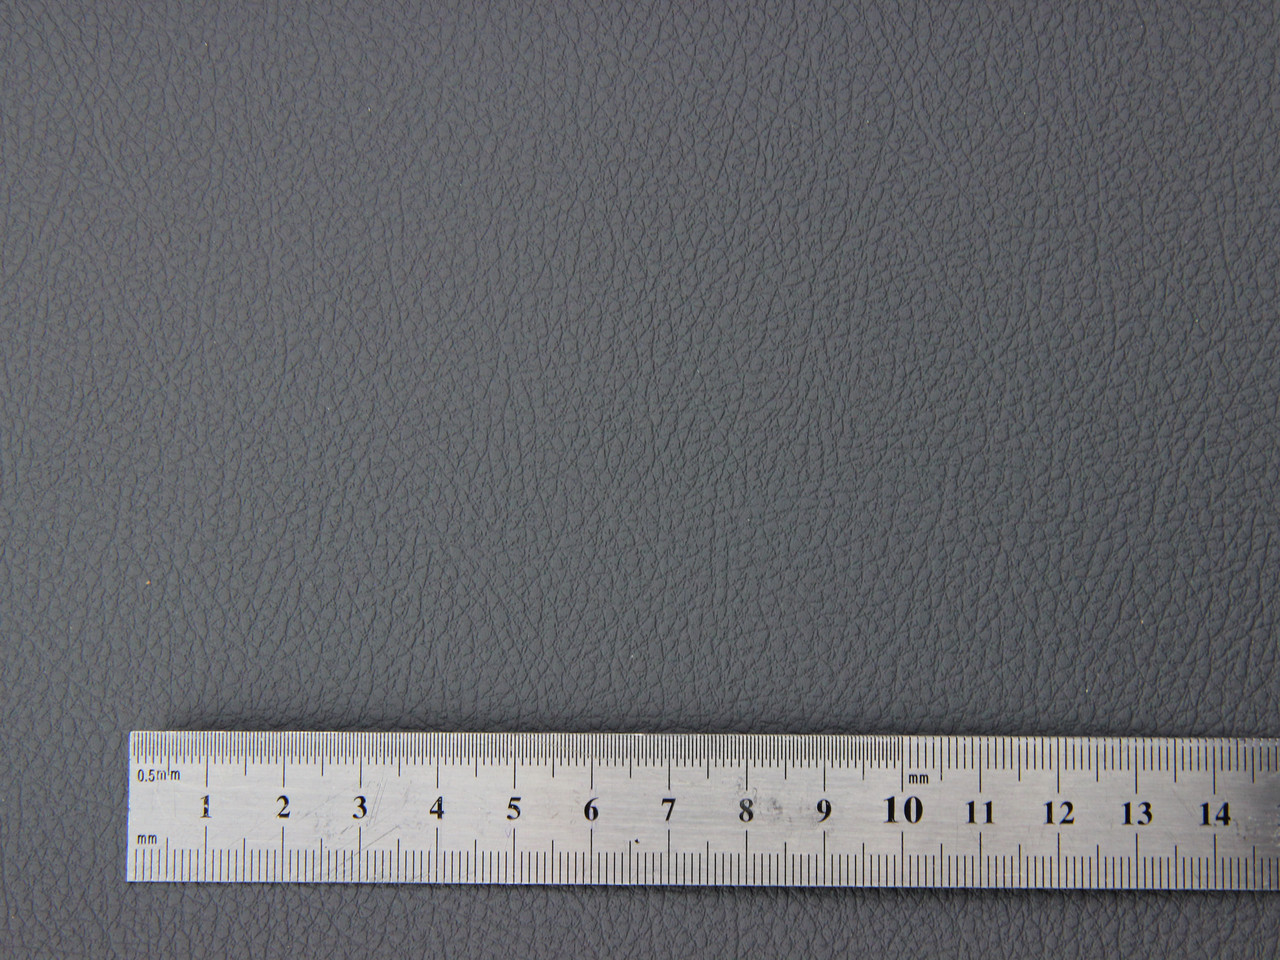 Автомобильный кожзам перфорированный BAVYERA 1539п темно-серый, на тканевой основе (ширина 1,40м) Турция детальная фотка